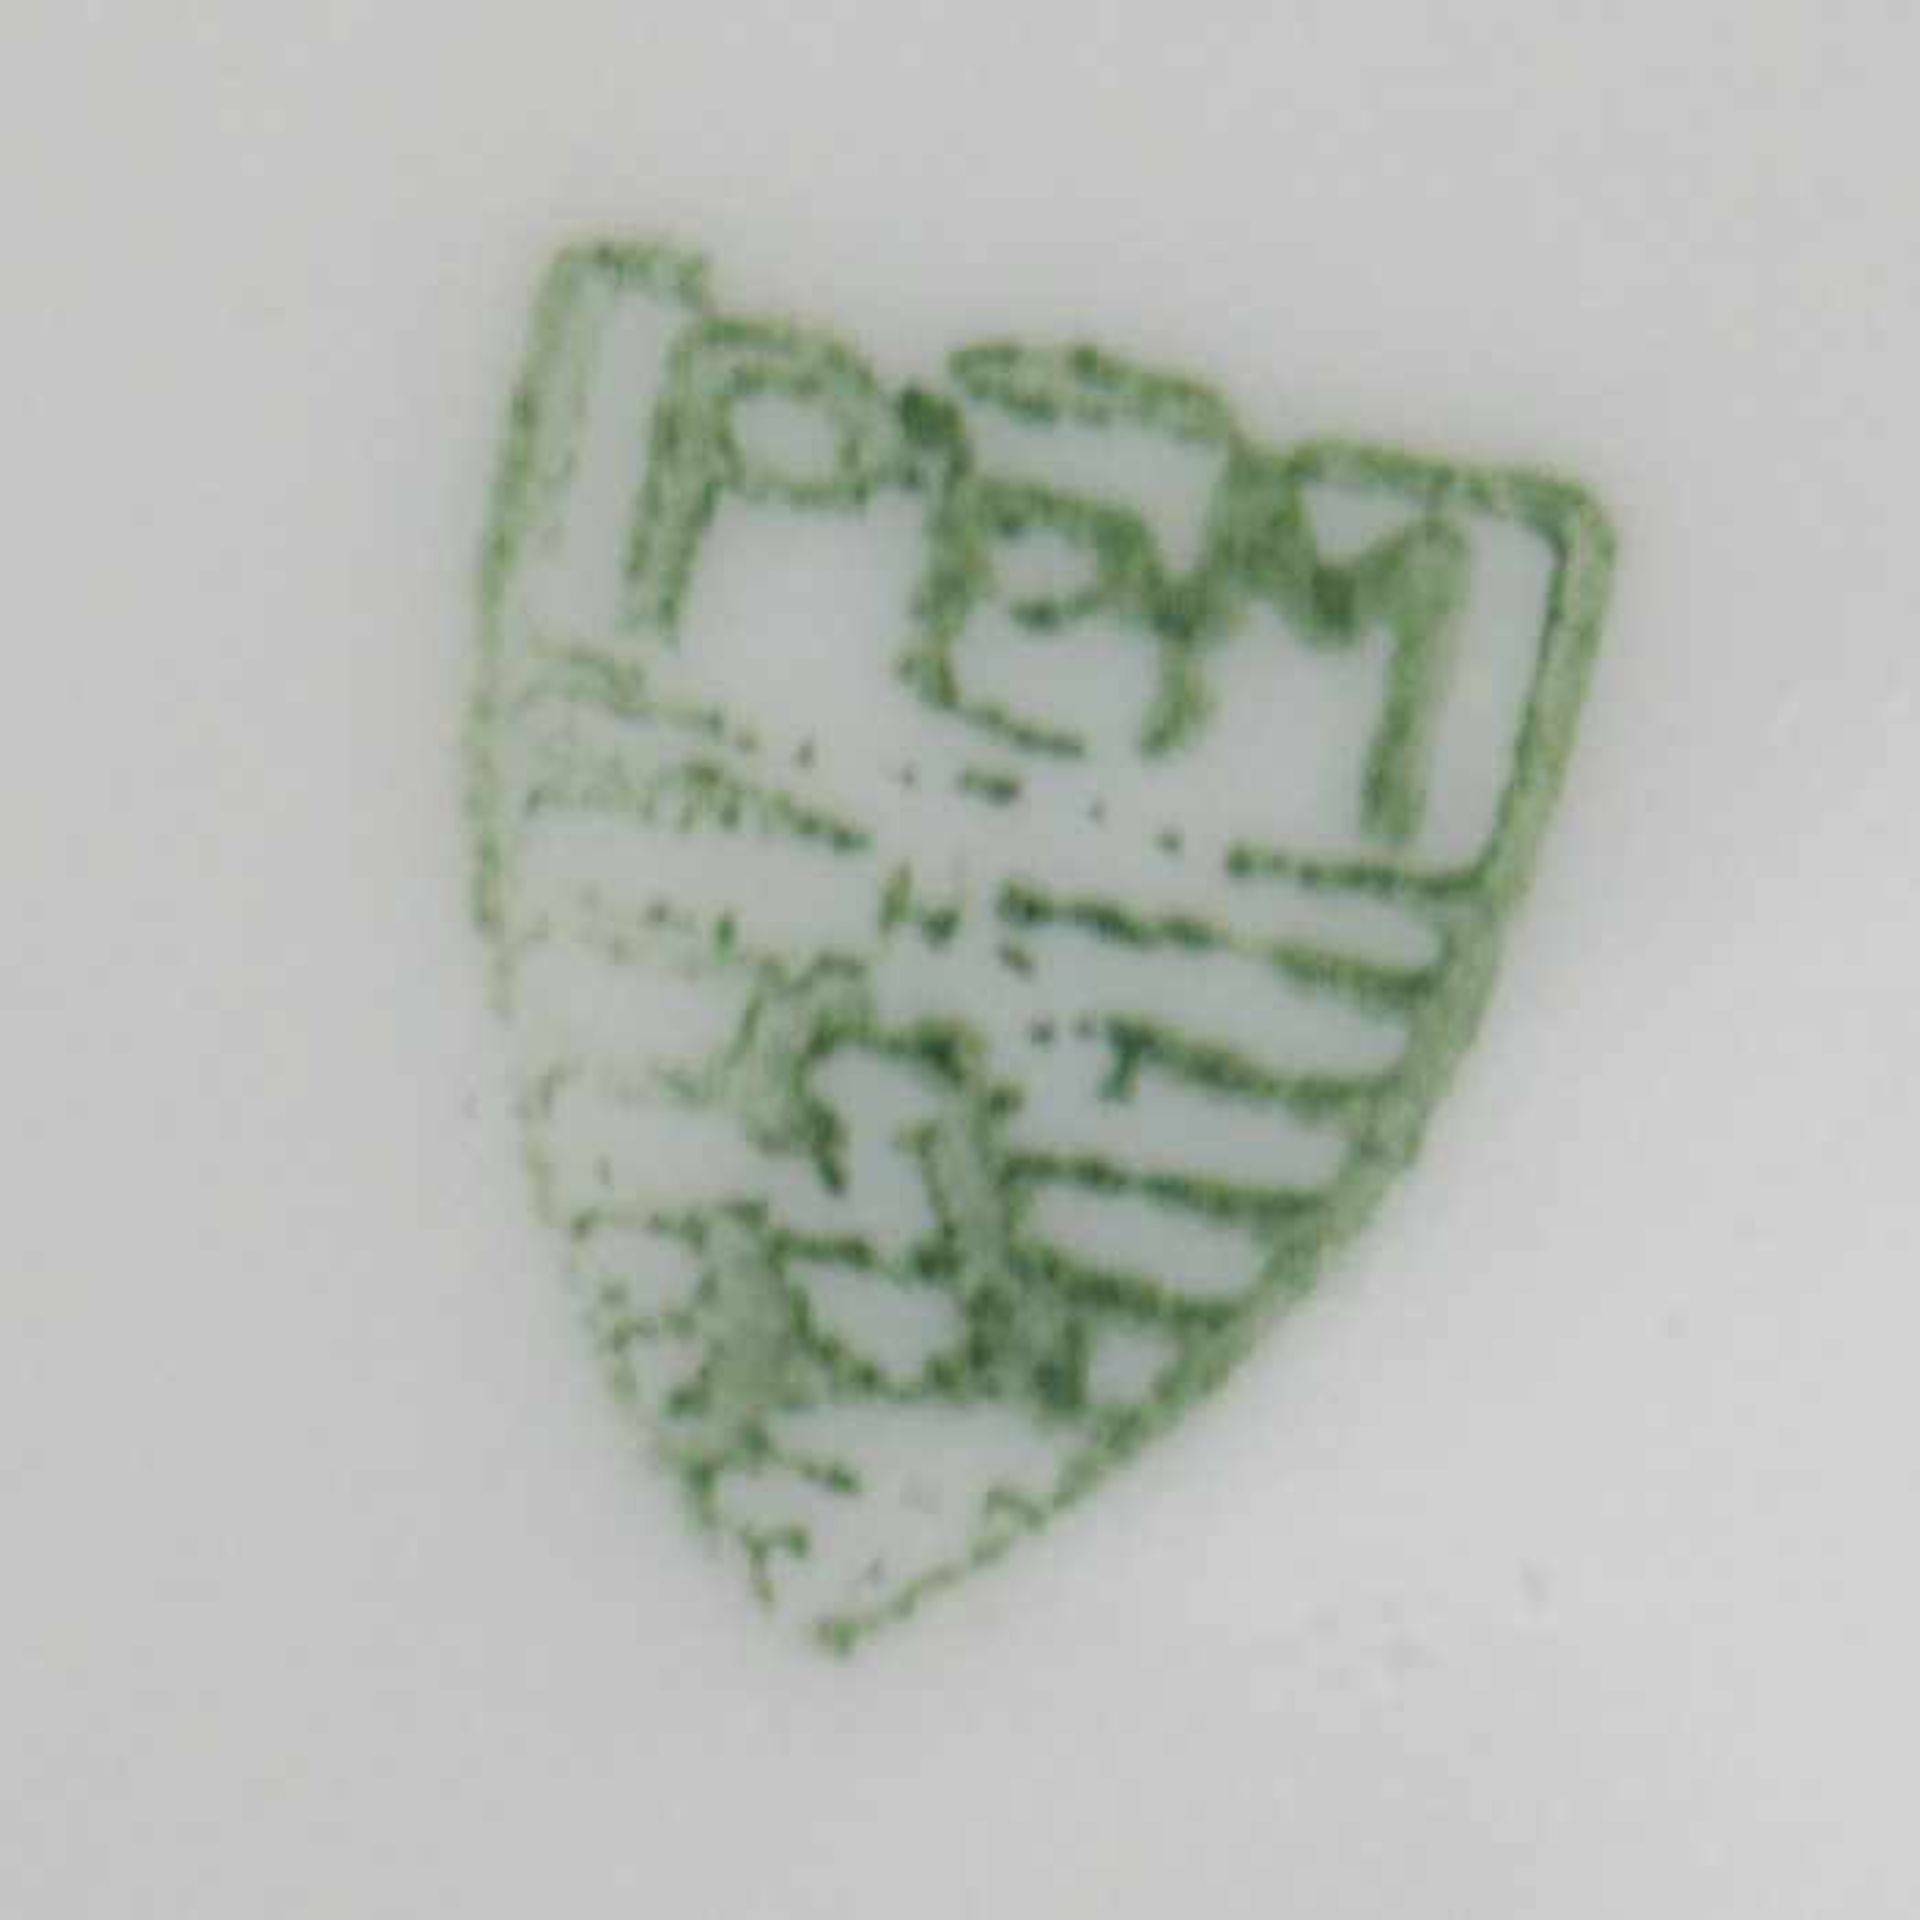 Burgau - Konvolutca. 1901-29, grüne Stempelmarke, Jugendstil, 3 St, Form "Glatt", Dekor " - Bild 2 aus 2